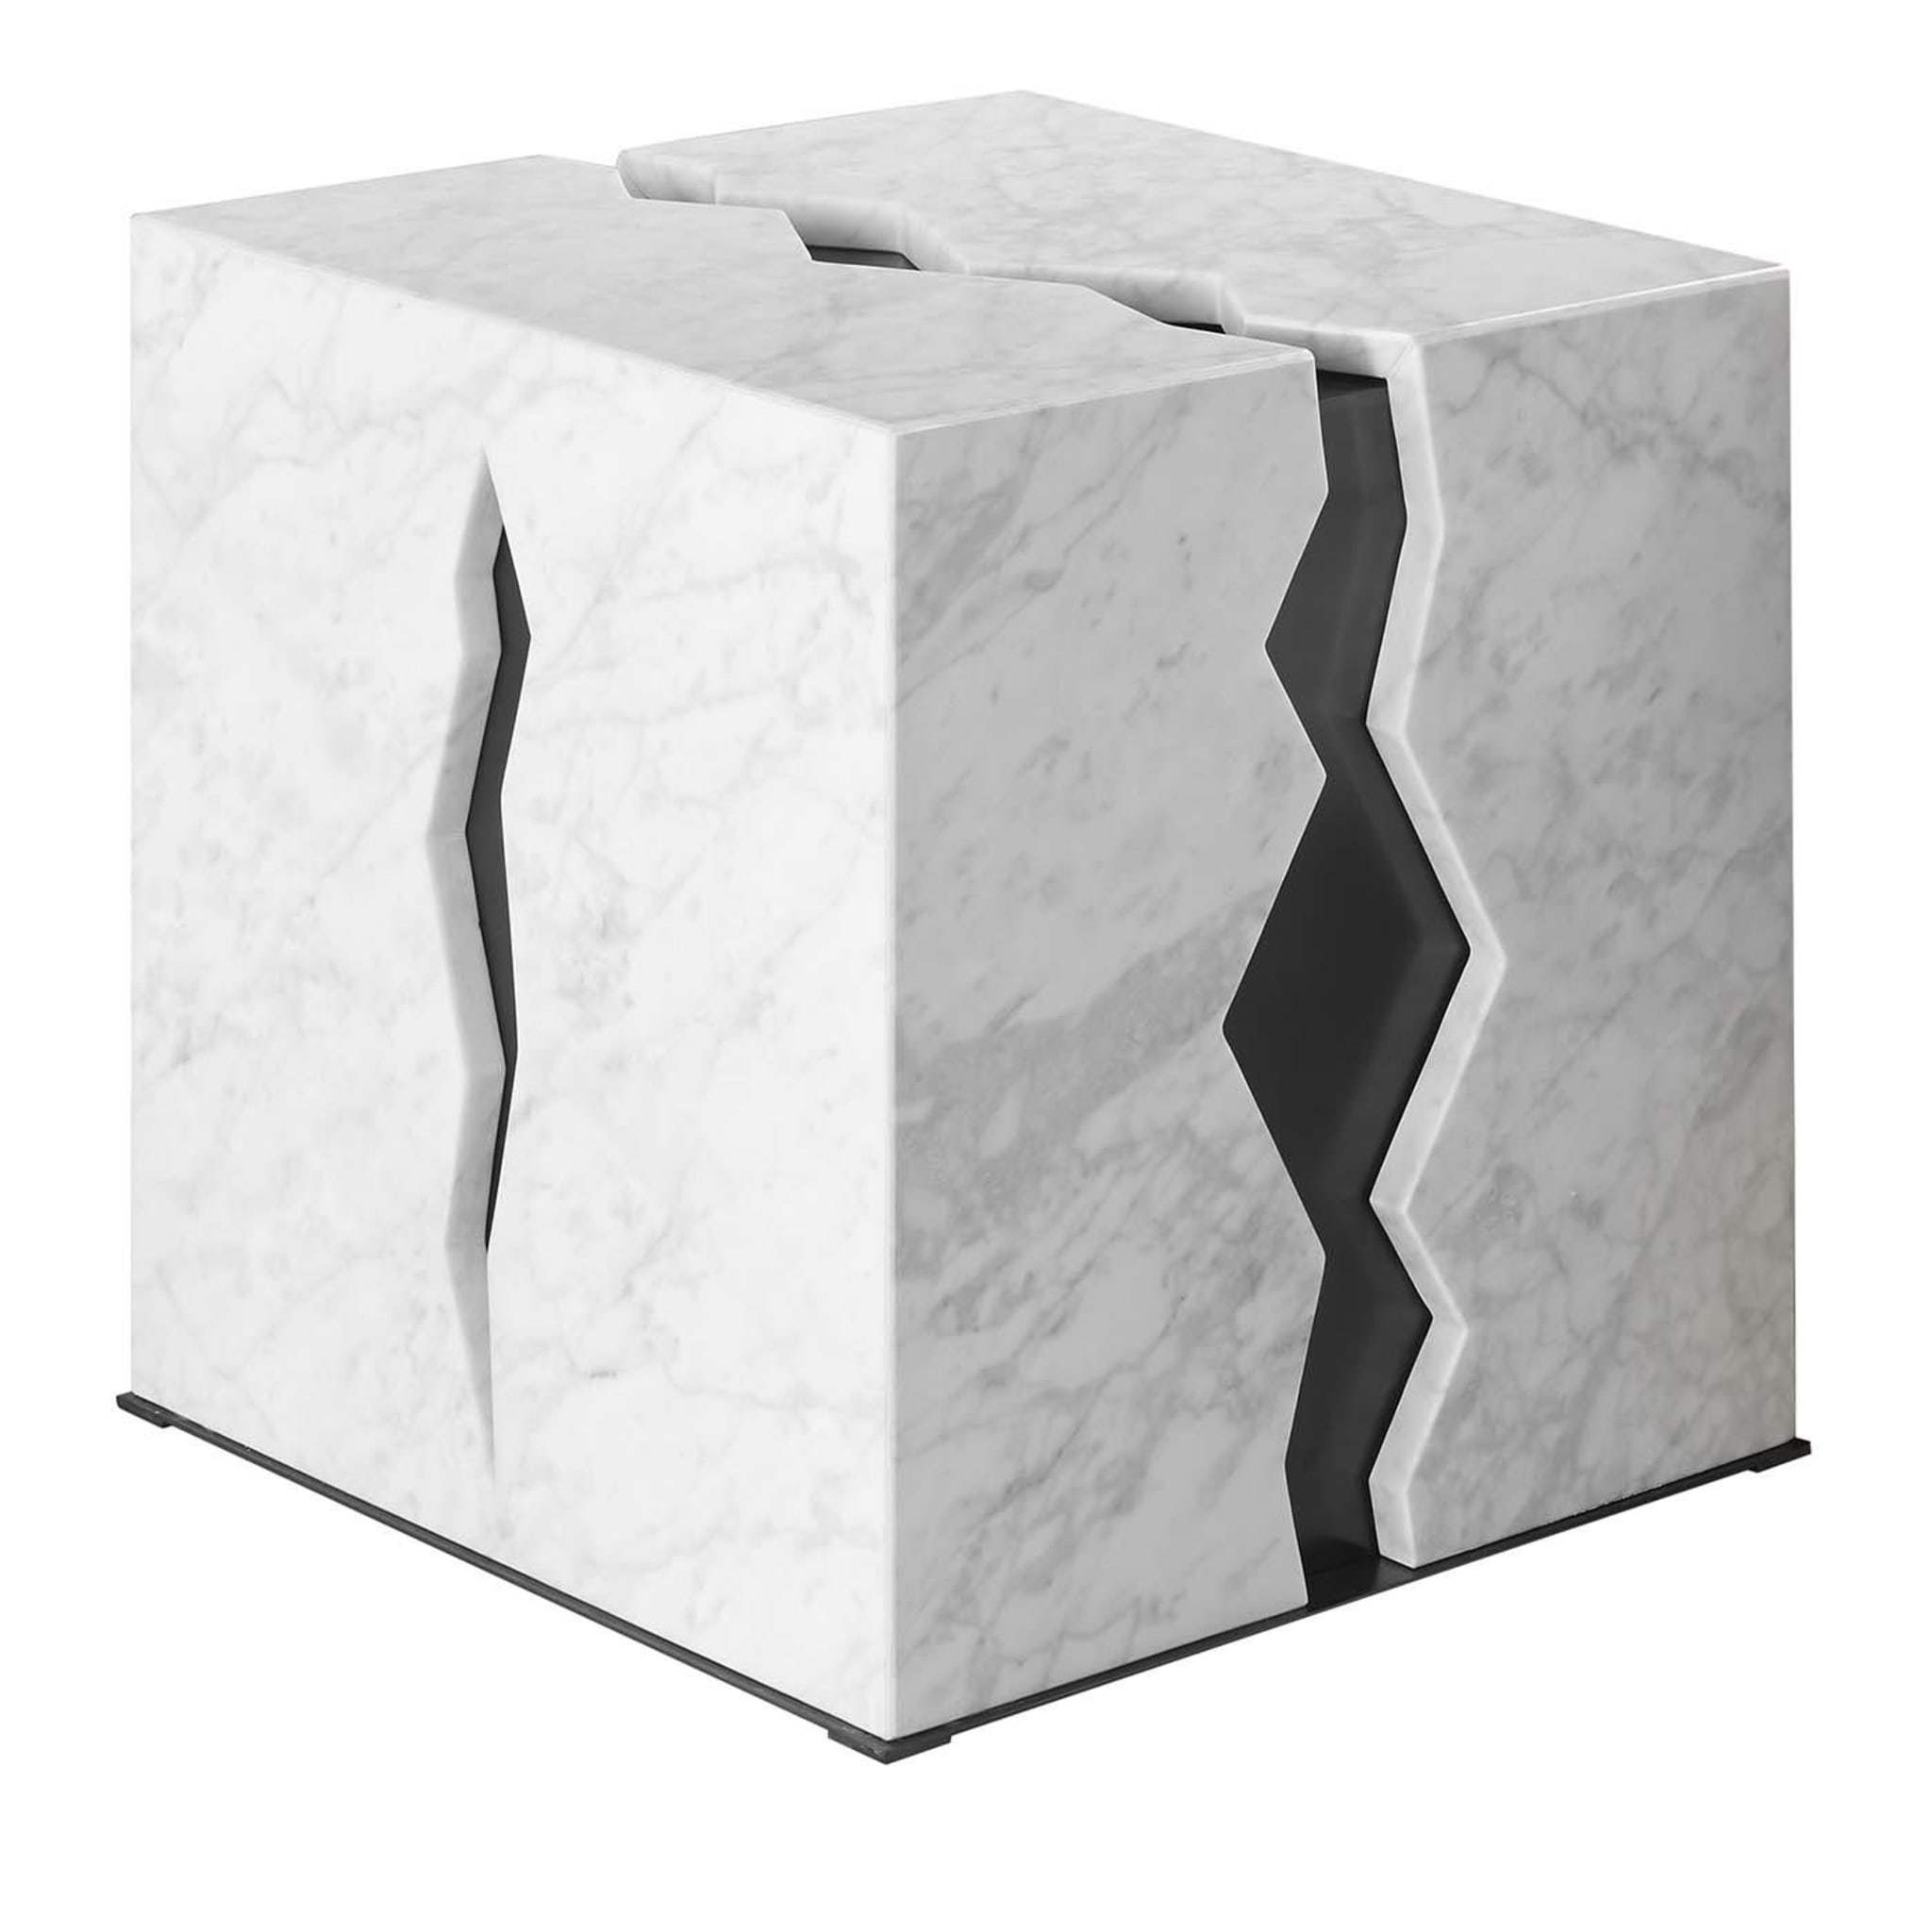 Crepa Couchtisch aus weißem Carrara-Marmor - Hauptansicht